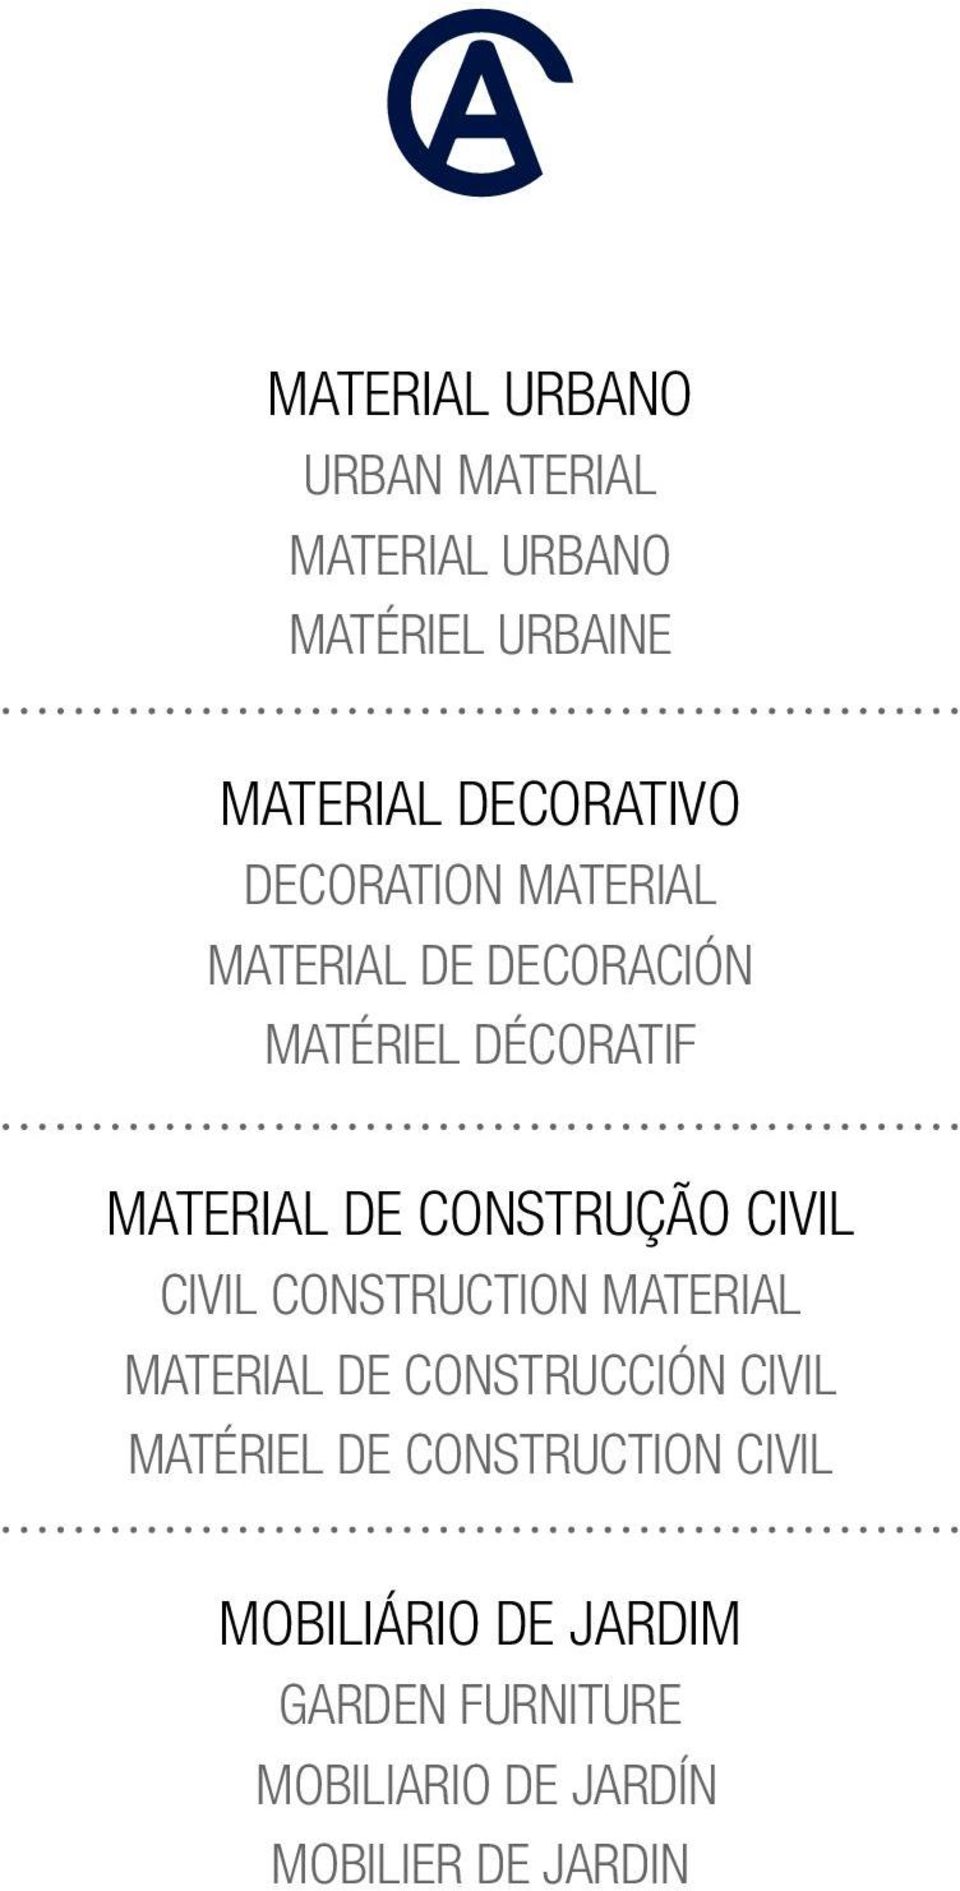 CIVIL CIVIL CONSTRUCTION MATERIAL MATERIAL DE CONSTRUCCIÓN CIVIL MATÉRIEL DE